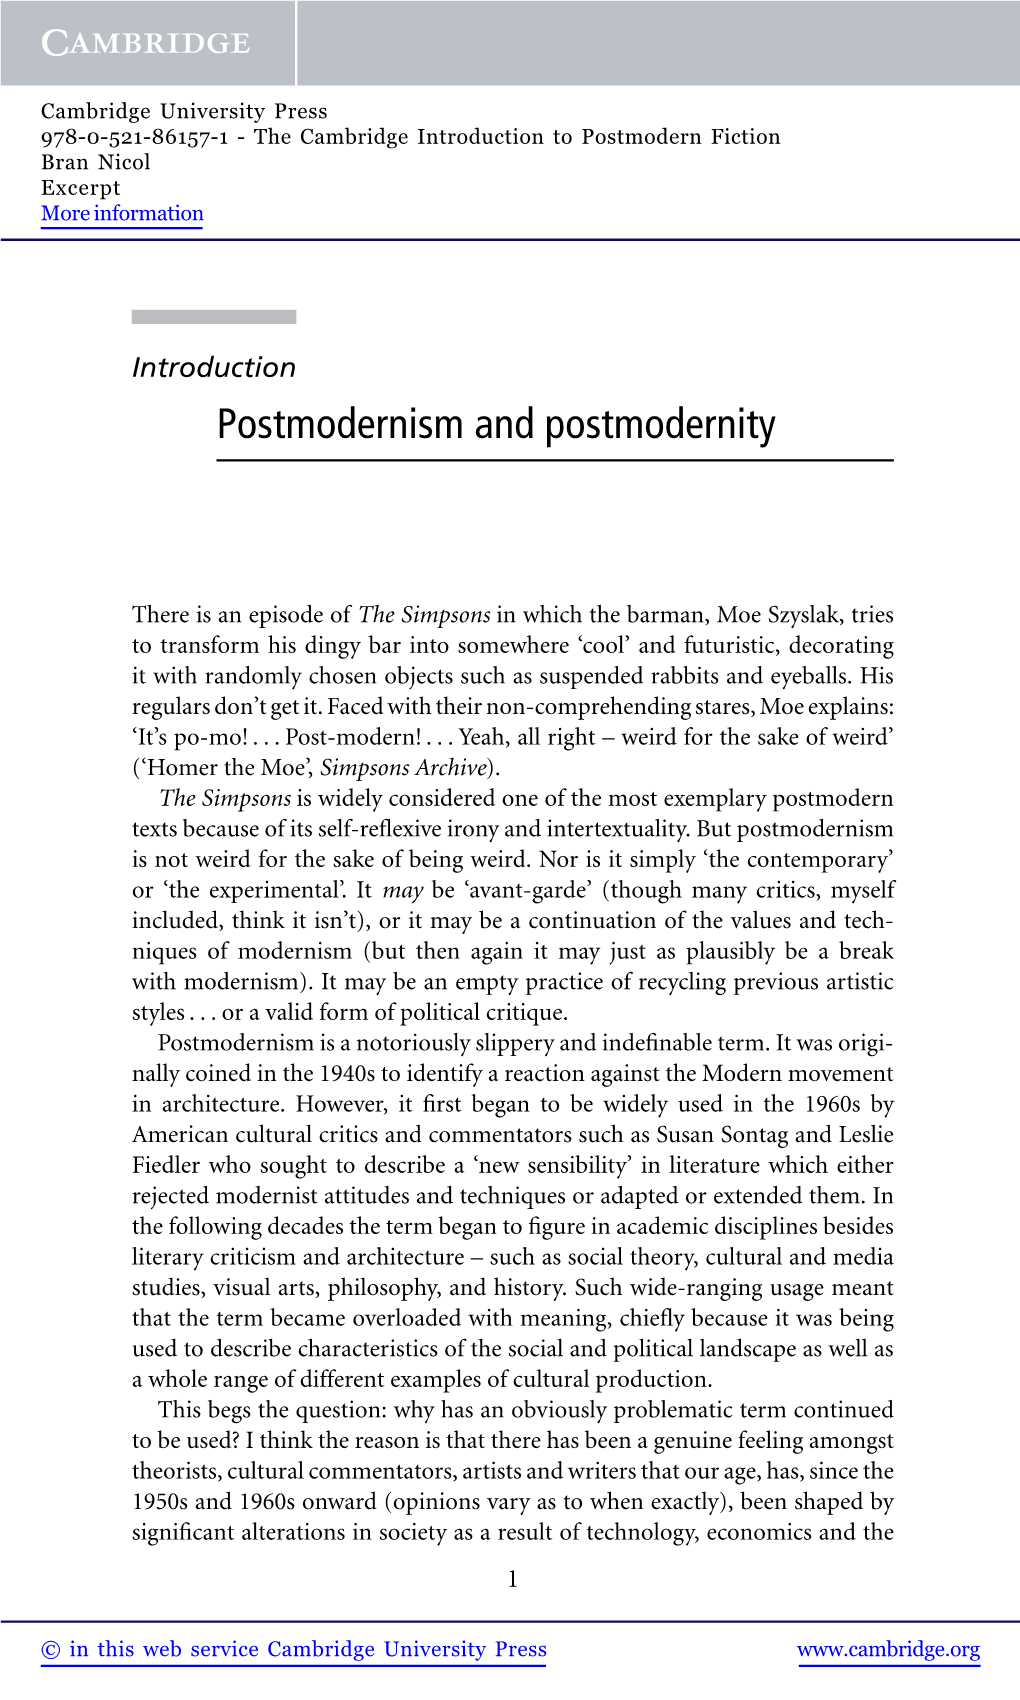 Postmodernism and Postmodernity